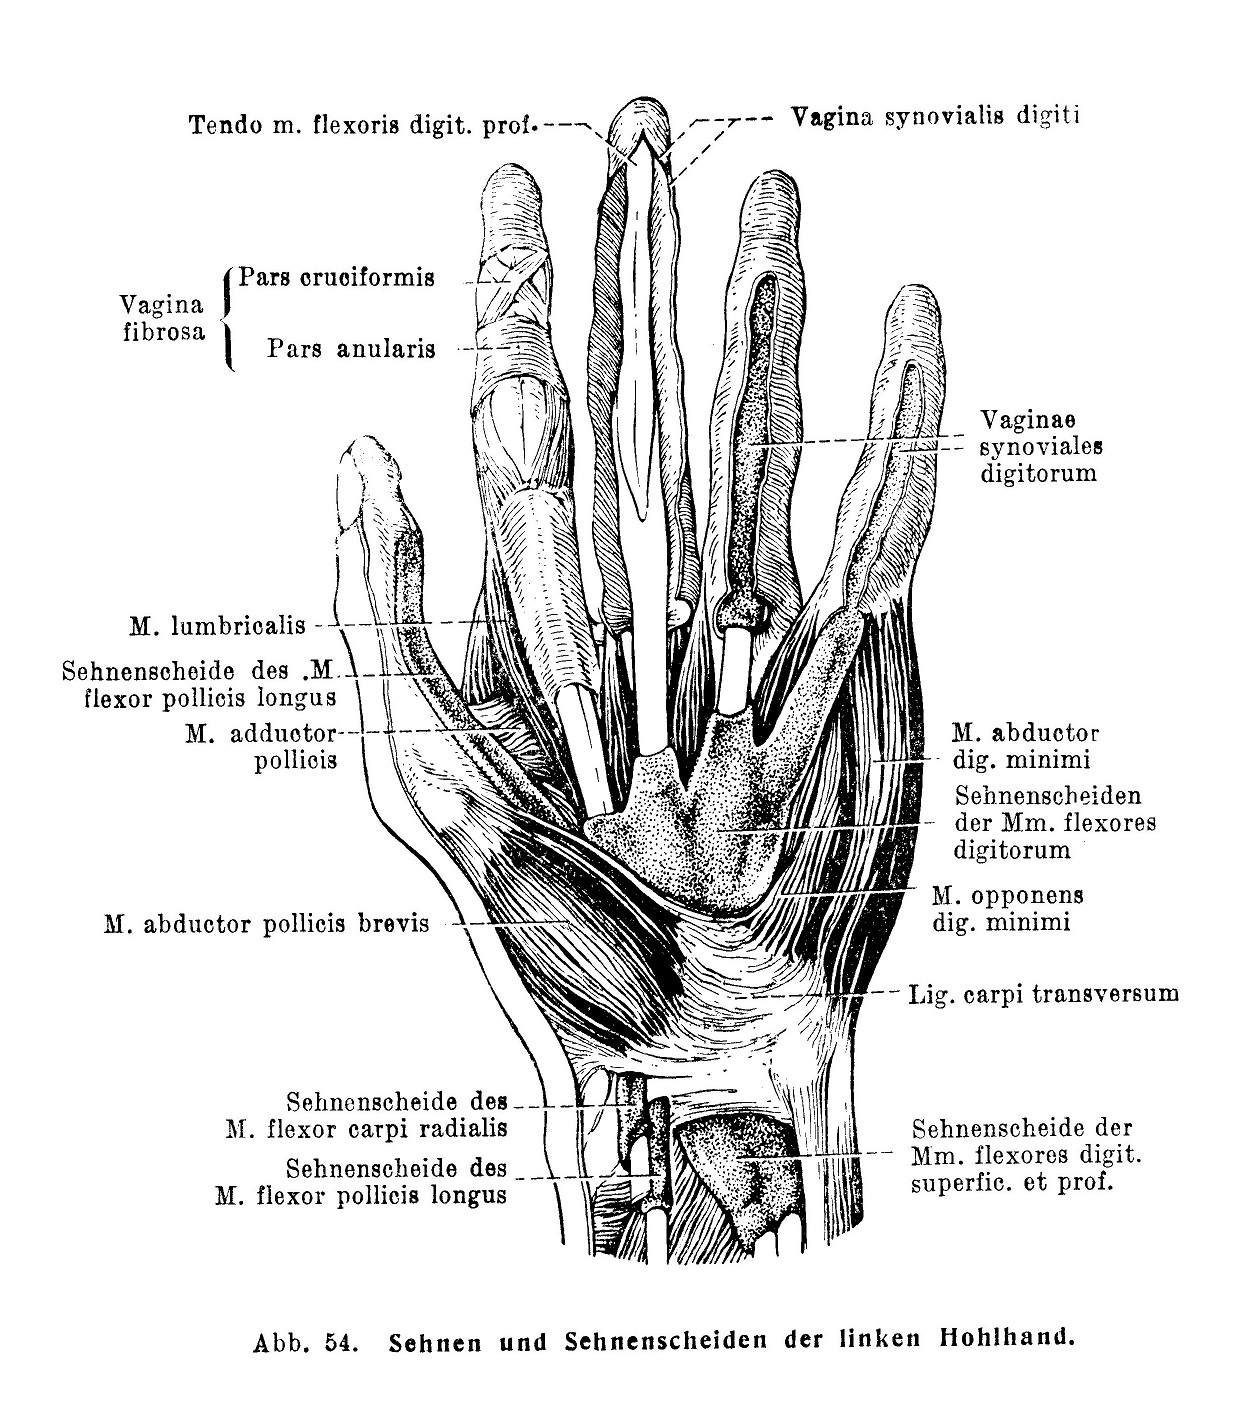 Sehnen und Sehnenscheiden der linken Hohlhand